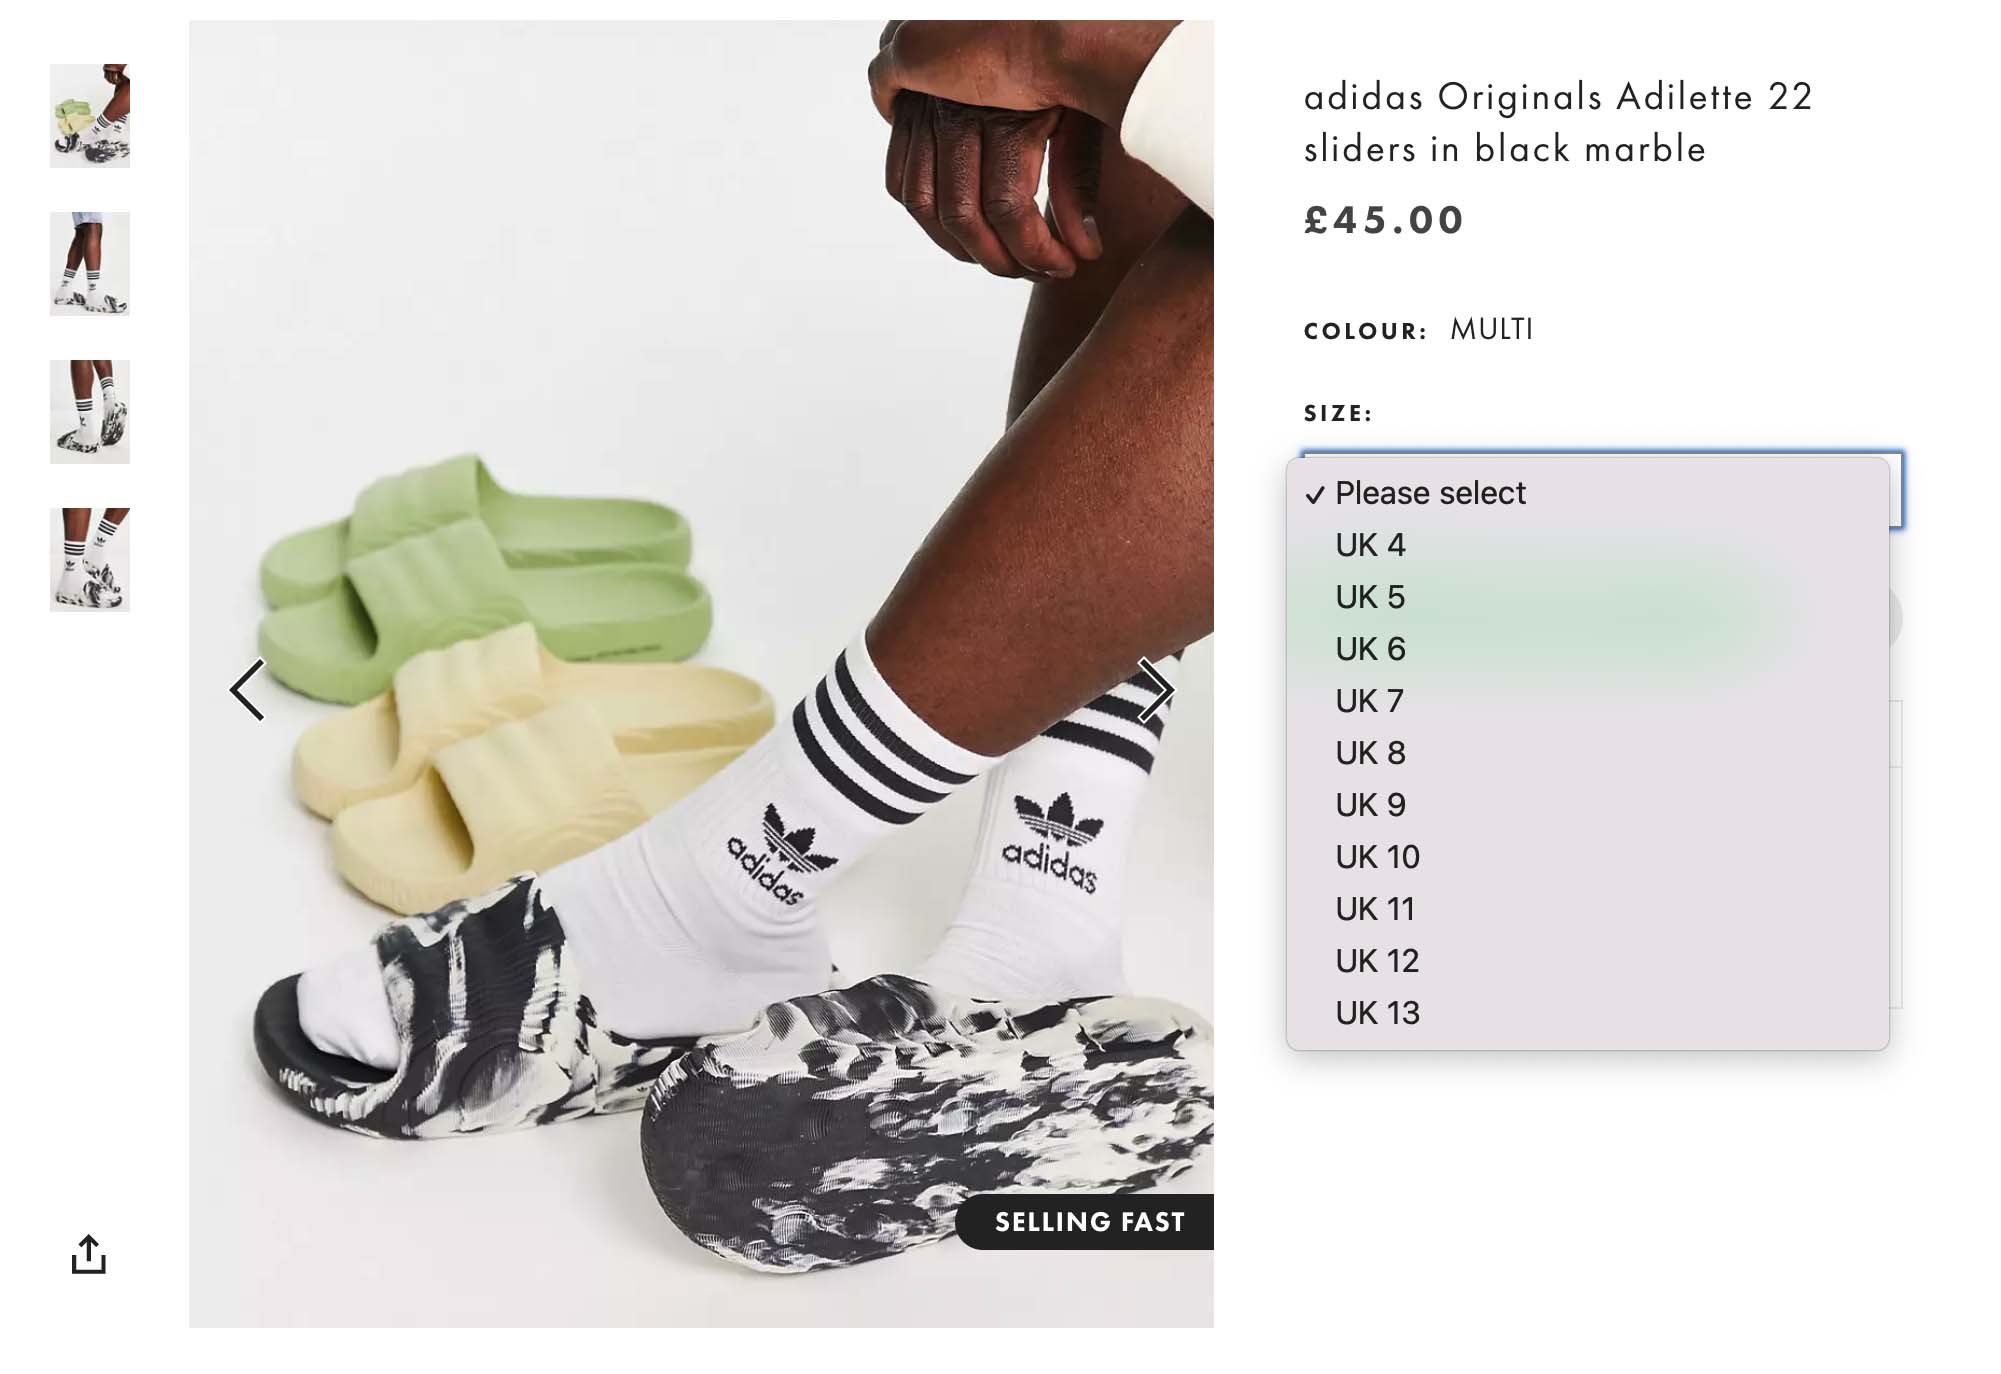 Adidas Originals Adilette 22 Sliders in Black and White-Multi